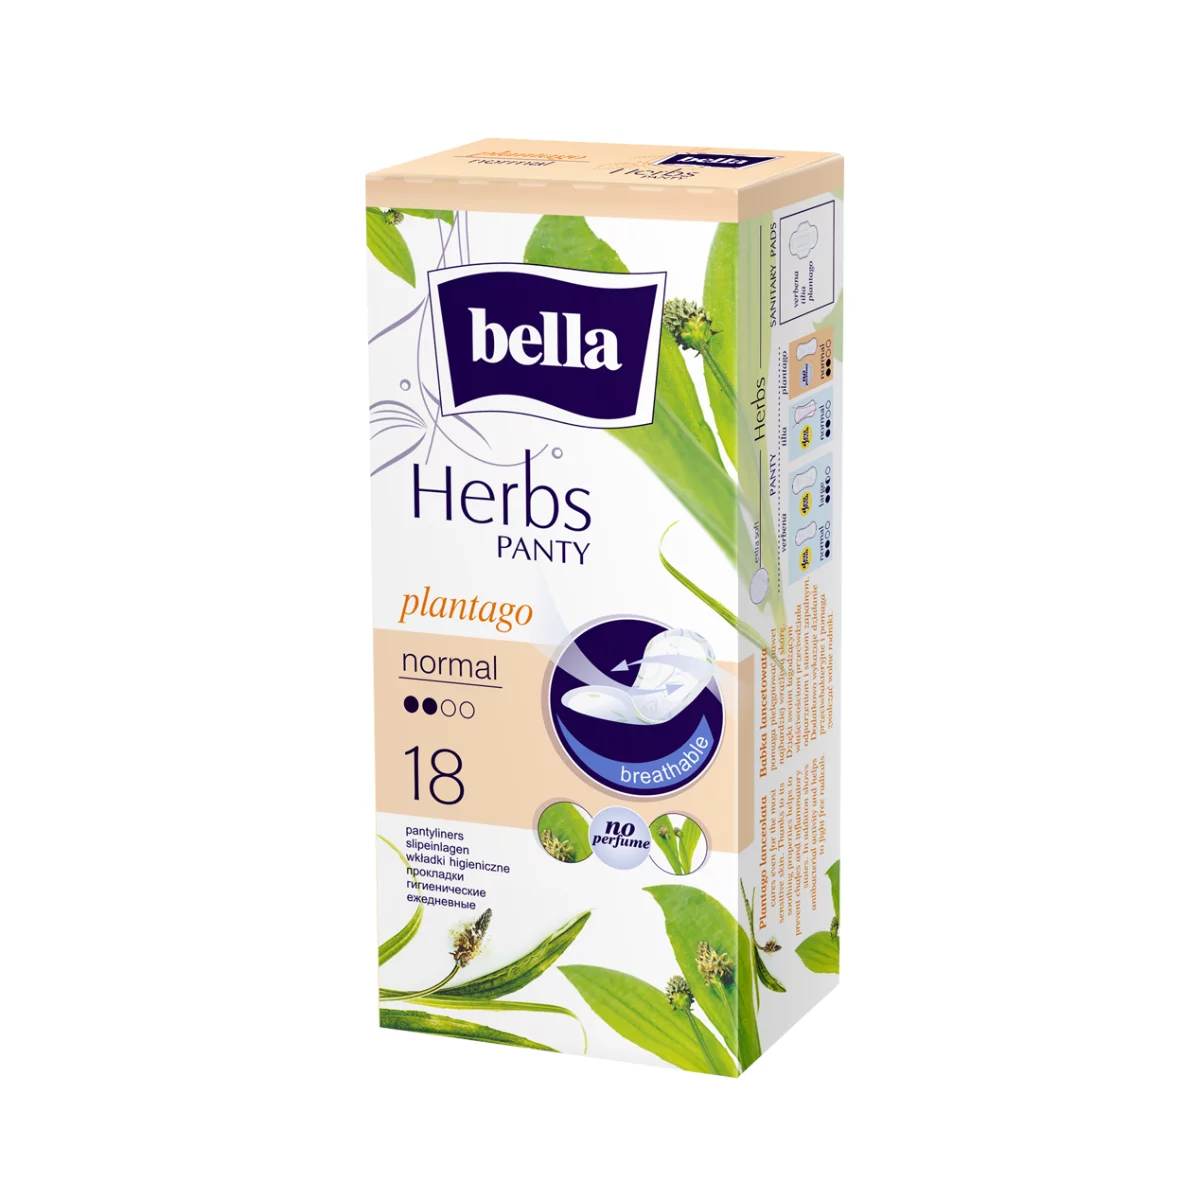 Bella Panty Herbs tisztasági betét 18db Lándzsás Útifű